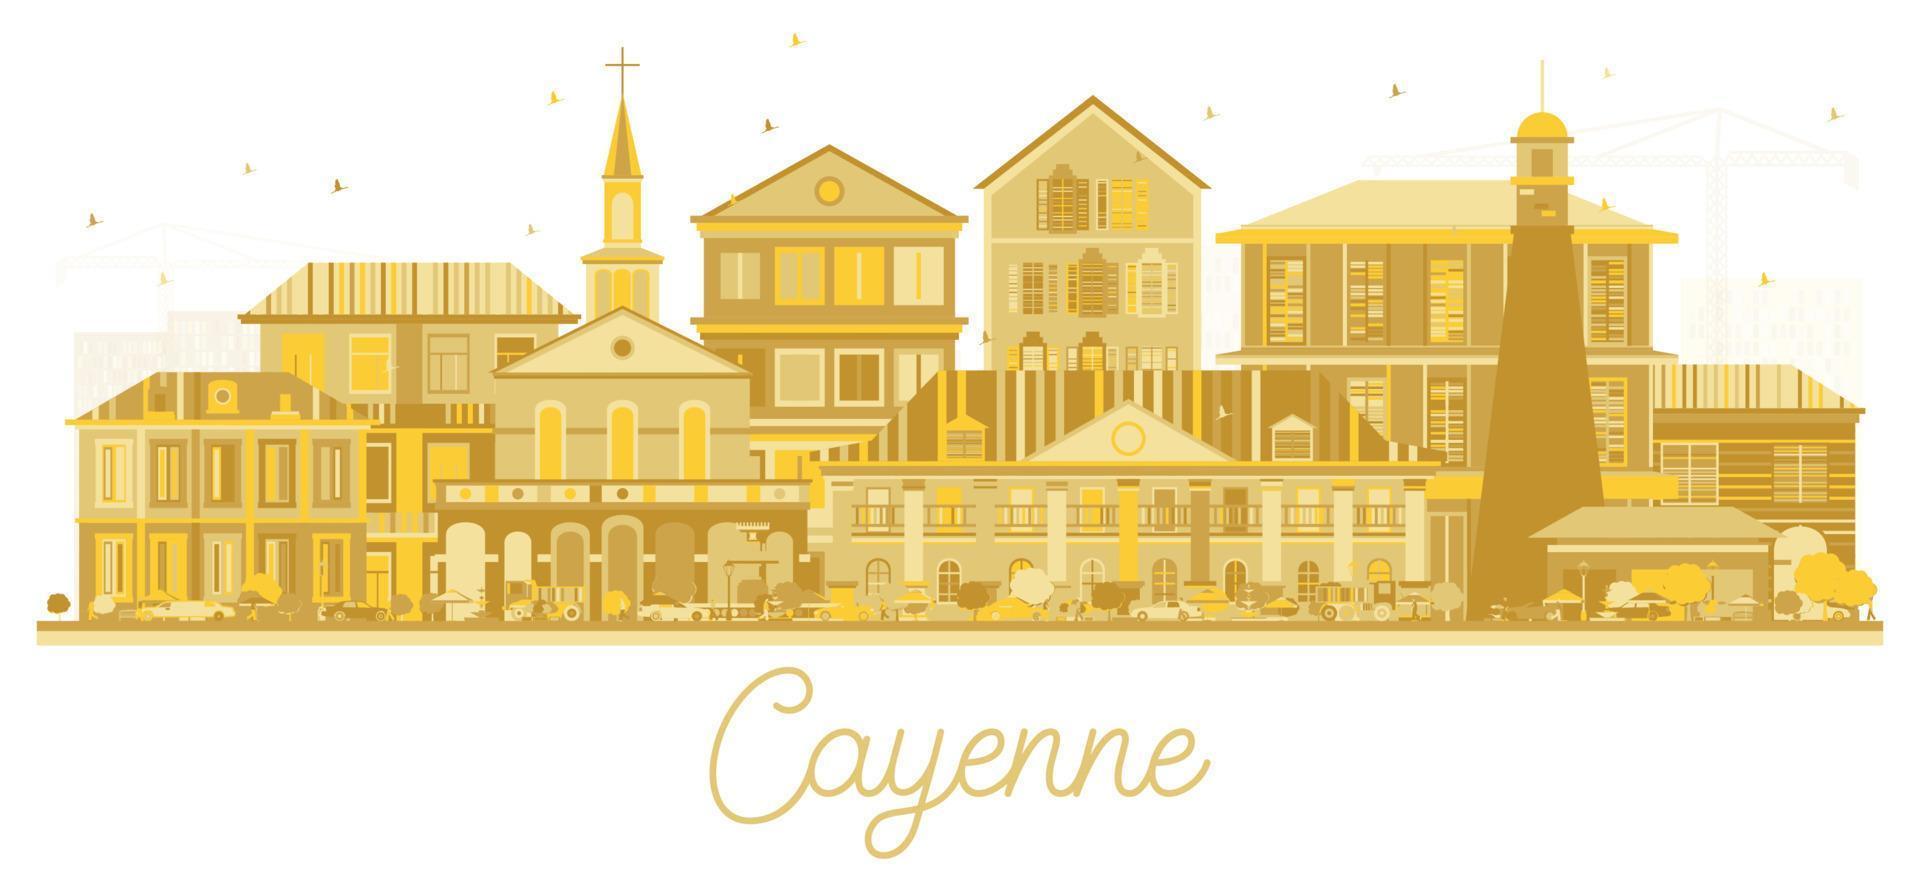 cayenne französisch-guayana stadtsilhouette mit goldenen gebäuden isoliert auf weiß. vektor